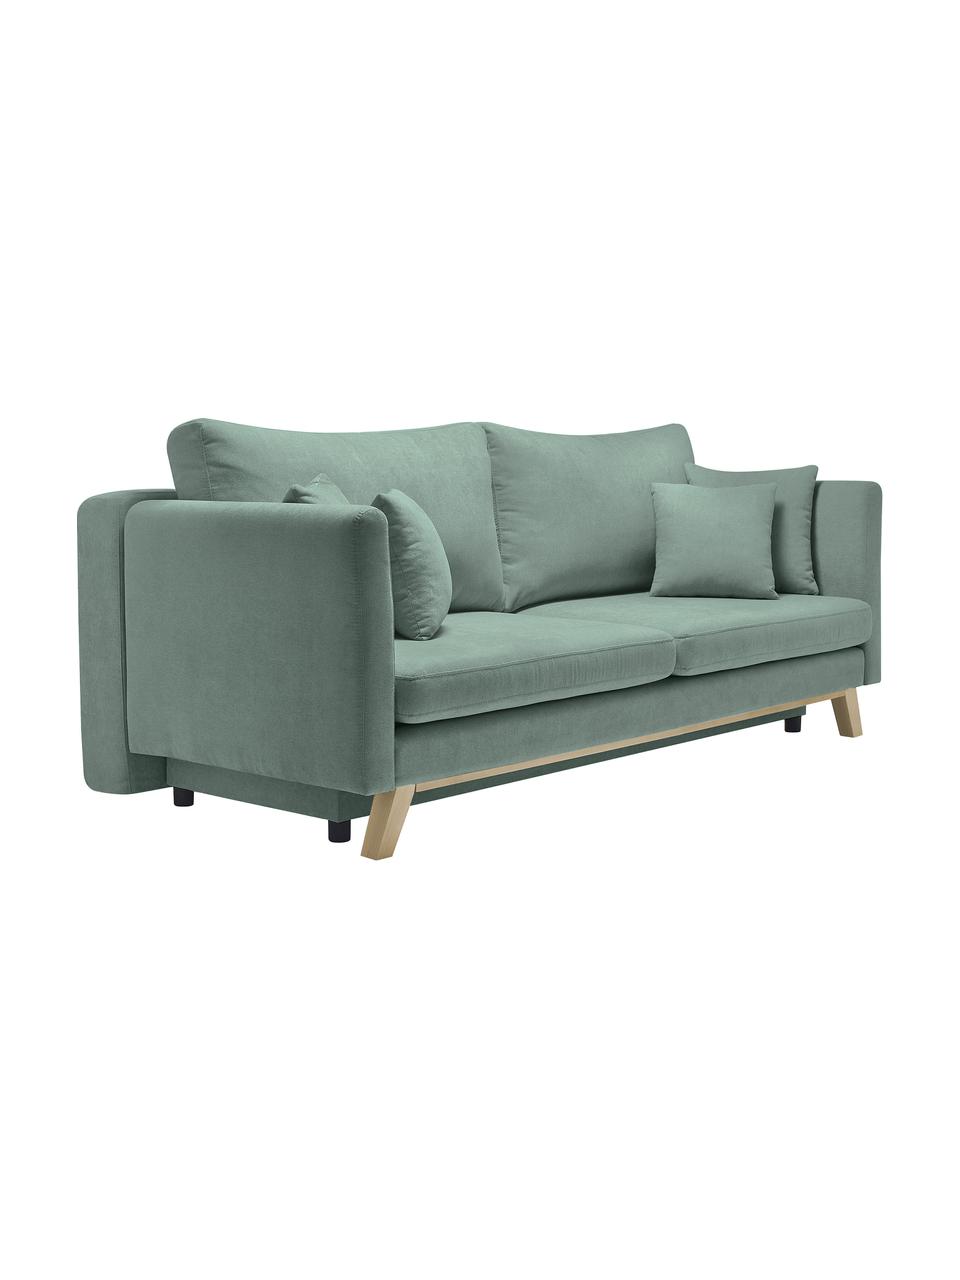 Sofa rozkładana z miejscem do przechowywania Triplo (3-osobowa), Tapicerka: 100% poliester, w dotyku , Nogi: metal lakierowany, Zielony miętowy, S 216 x G 105 cm